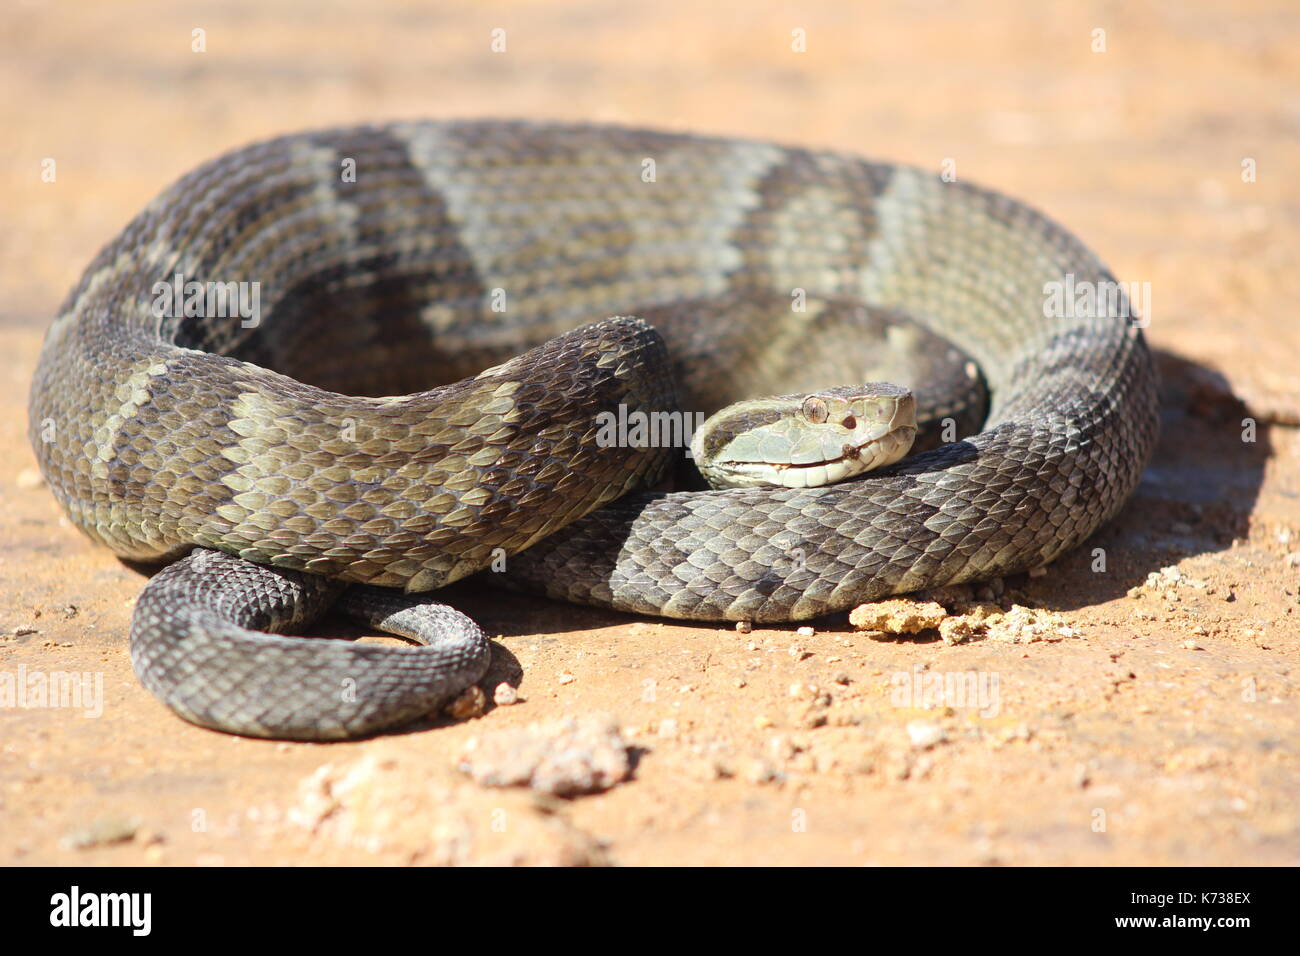 Serpientes nativas brasileñas Foto de stock